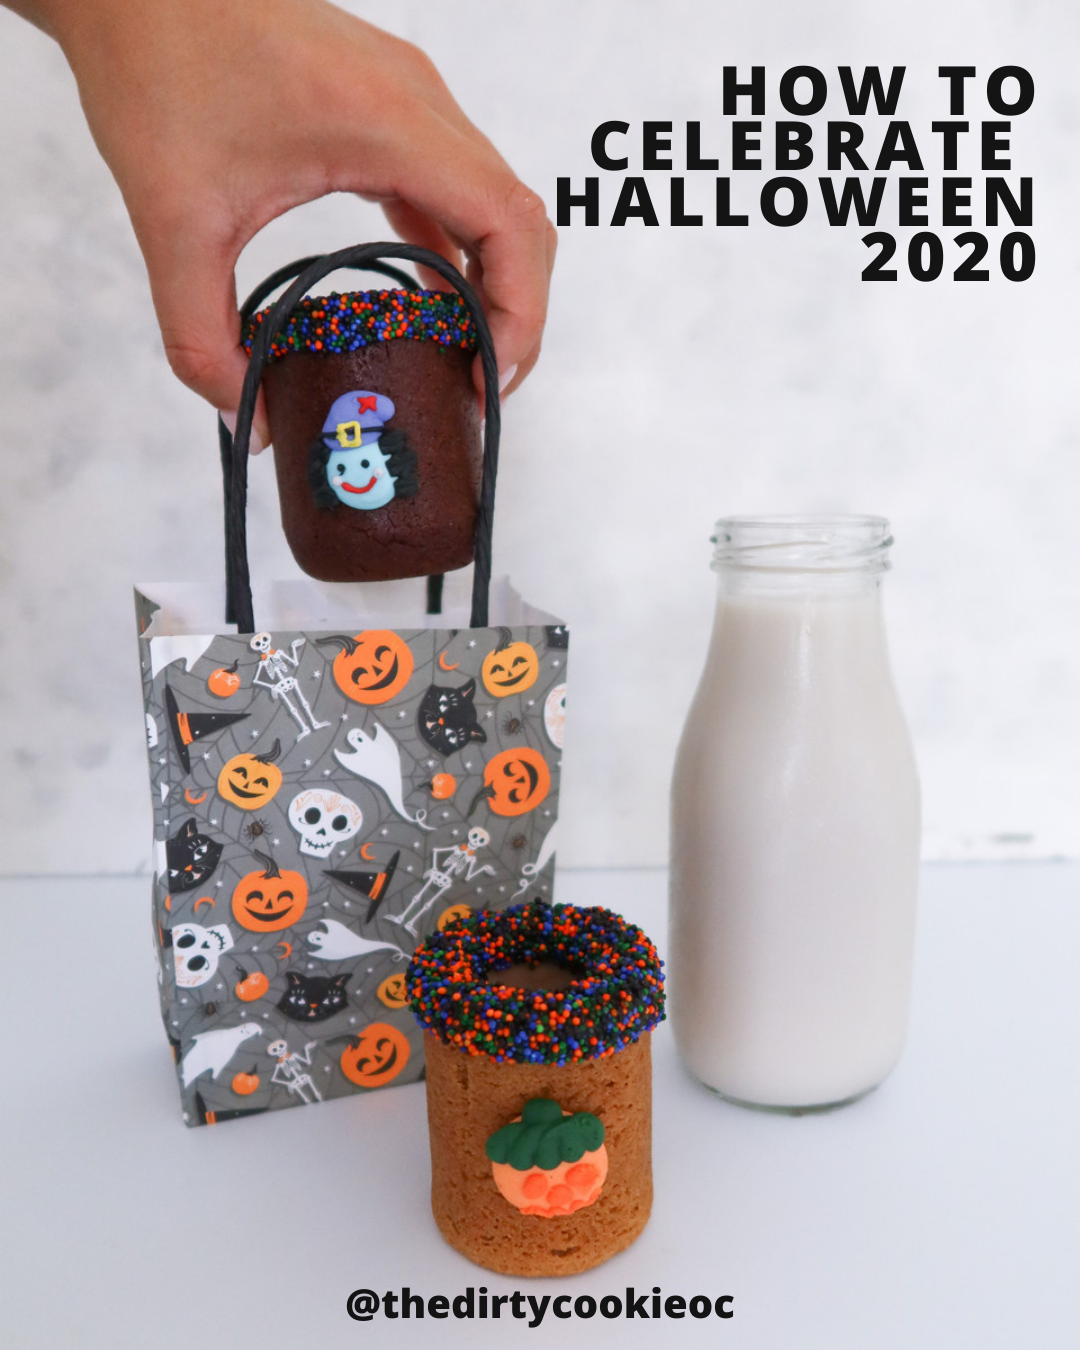 Spooky + Safe Halloween Activities 2020